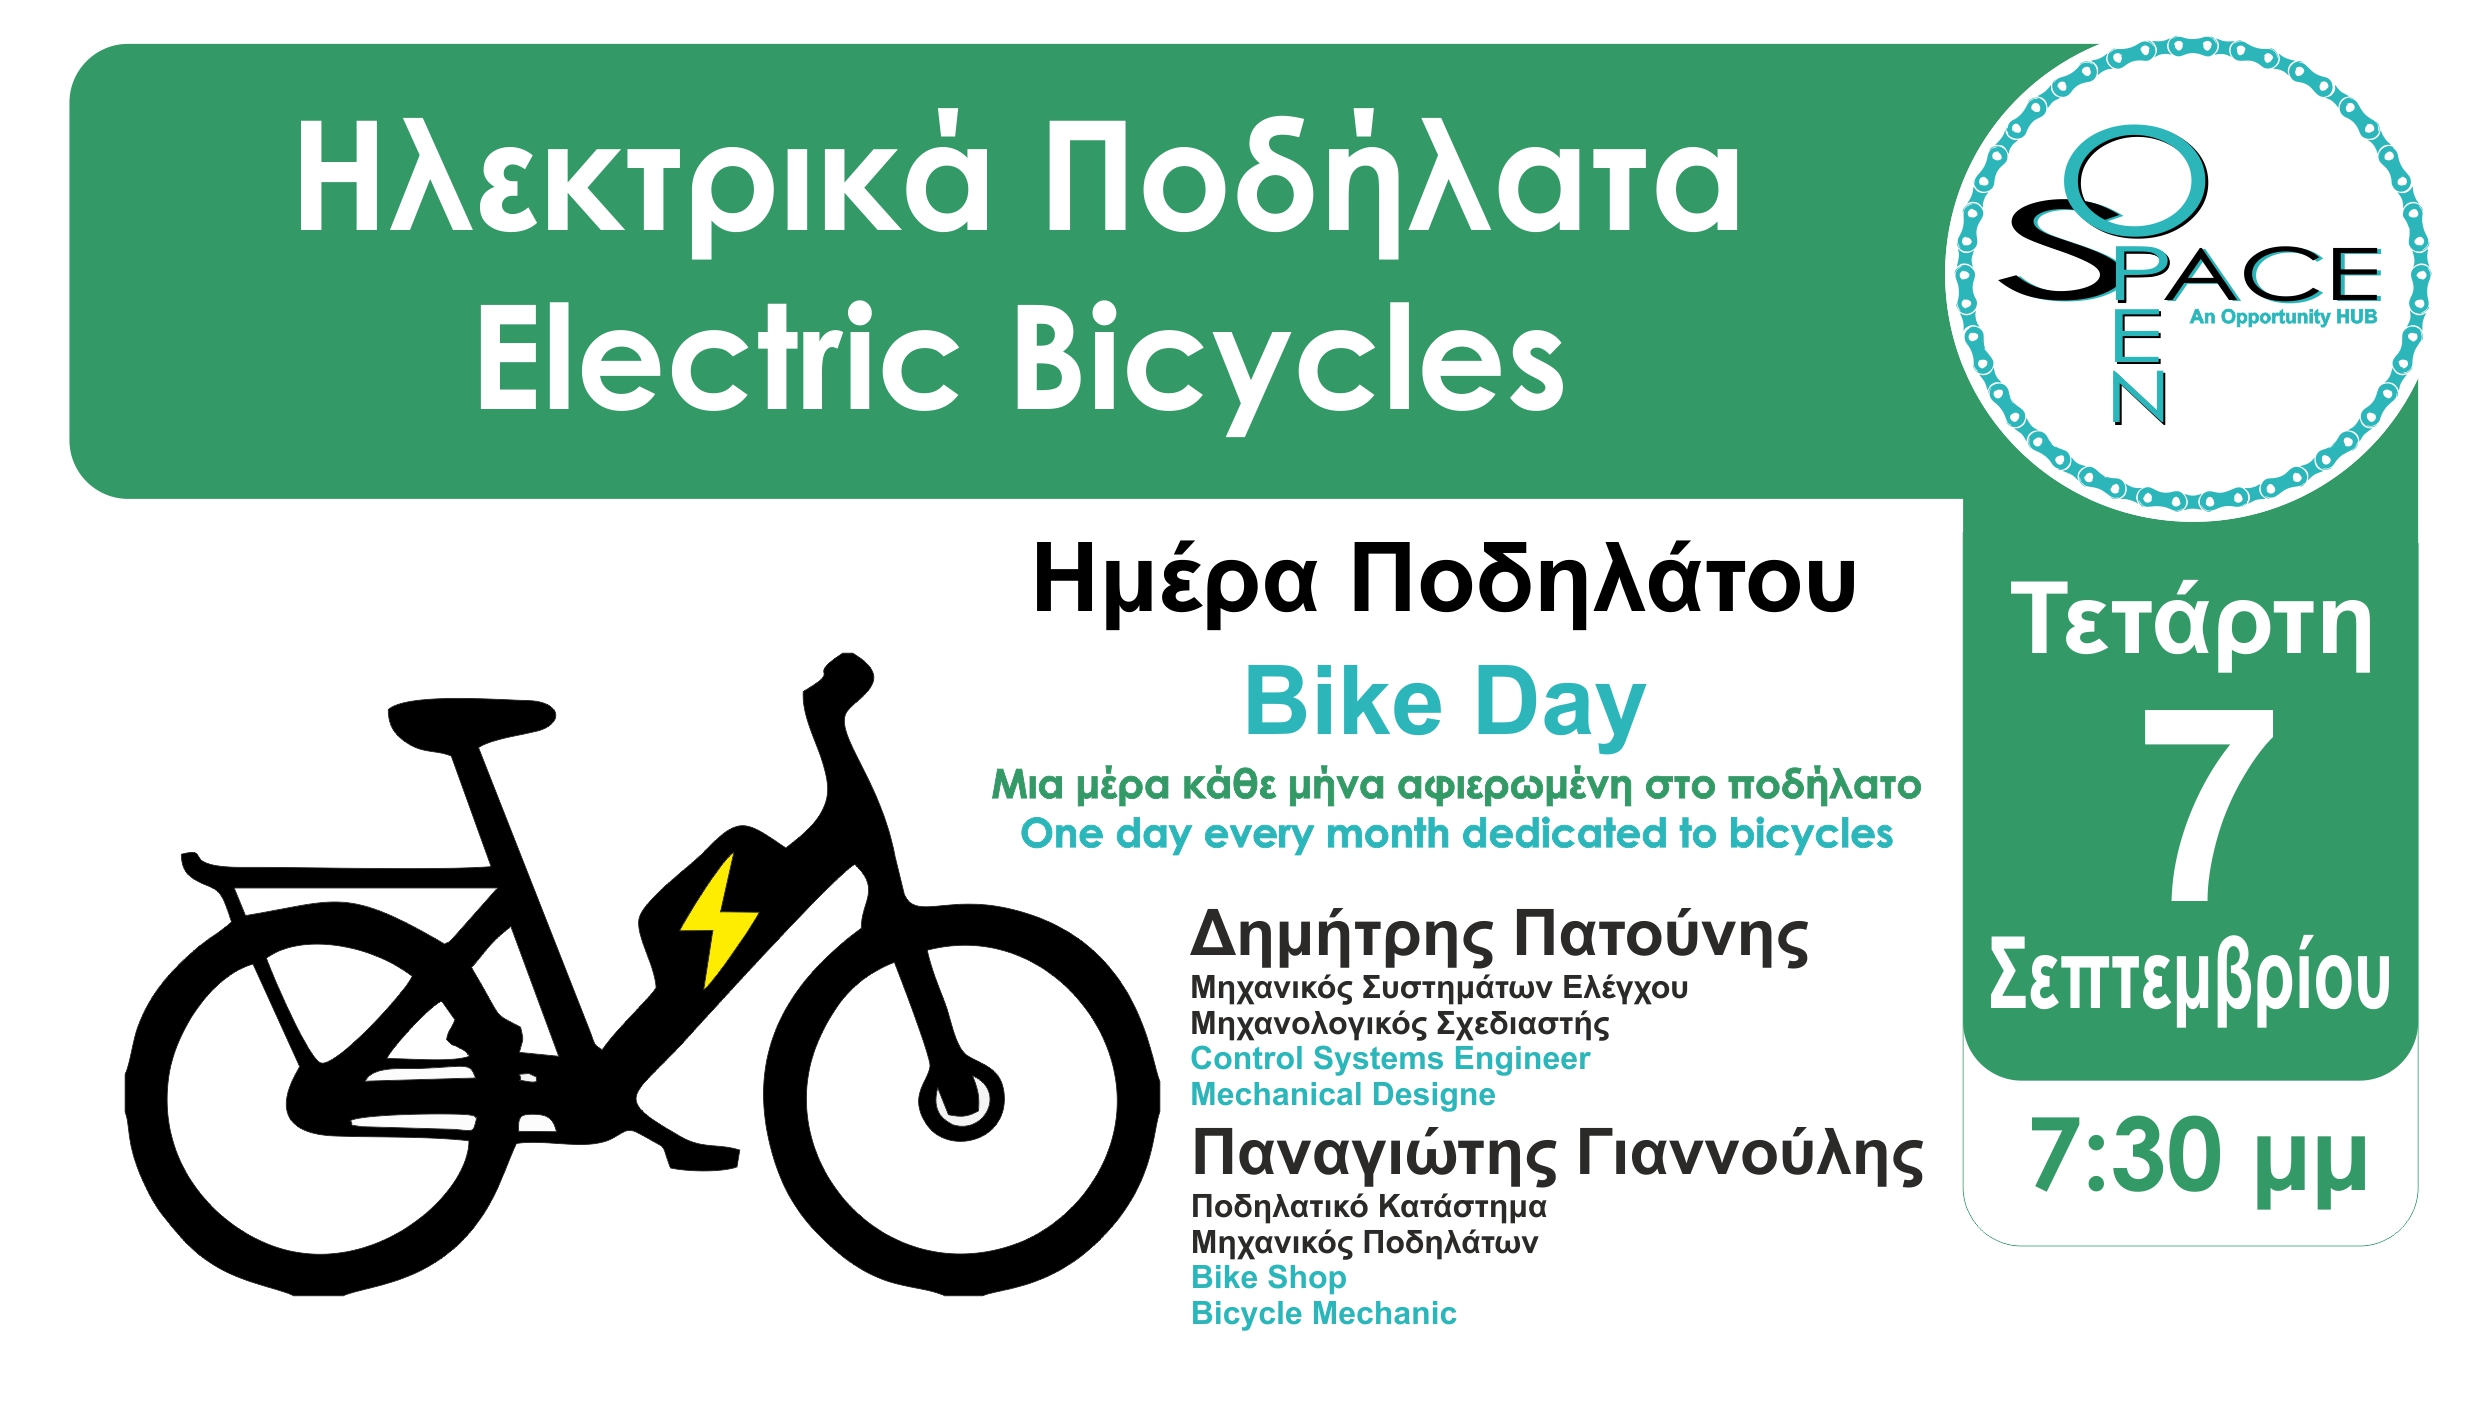 “Ημέρα Ποδηλάτου” αυτή την Τετάρτη στο Open Space